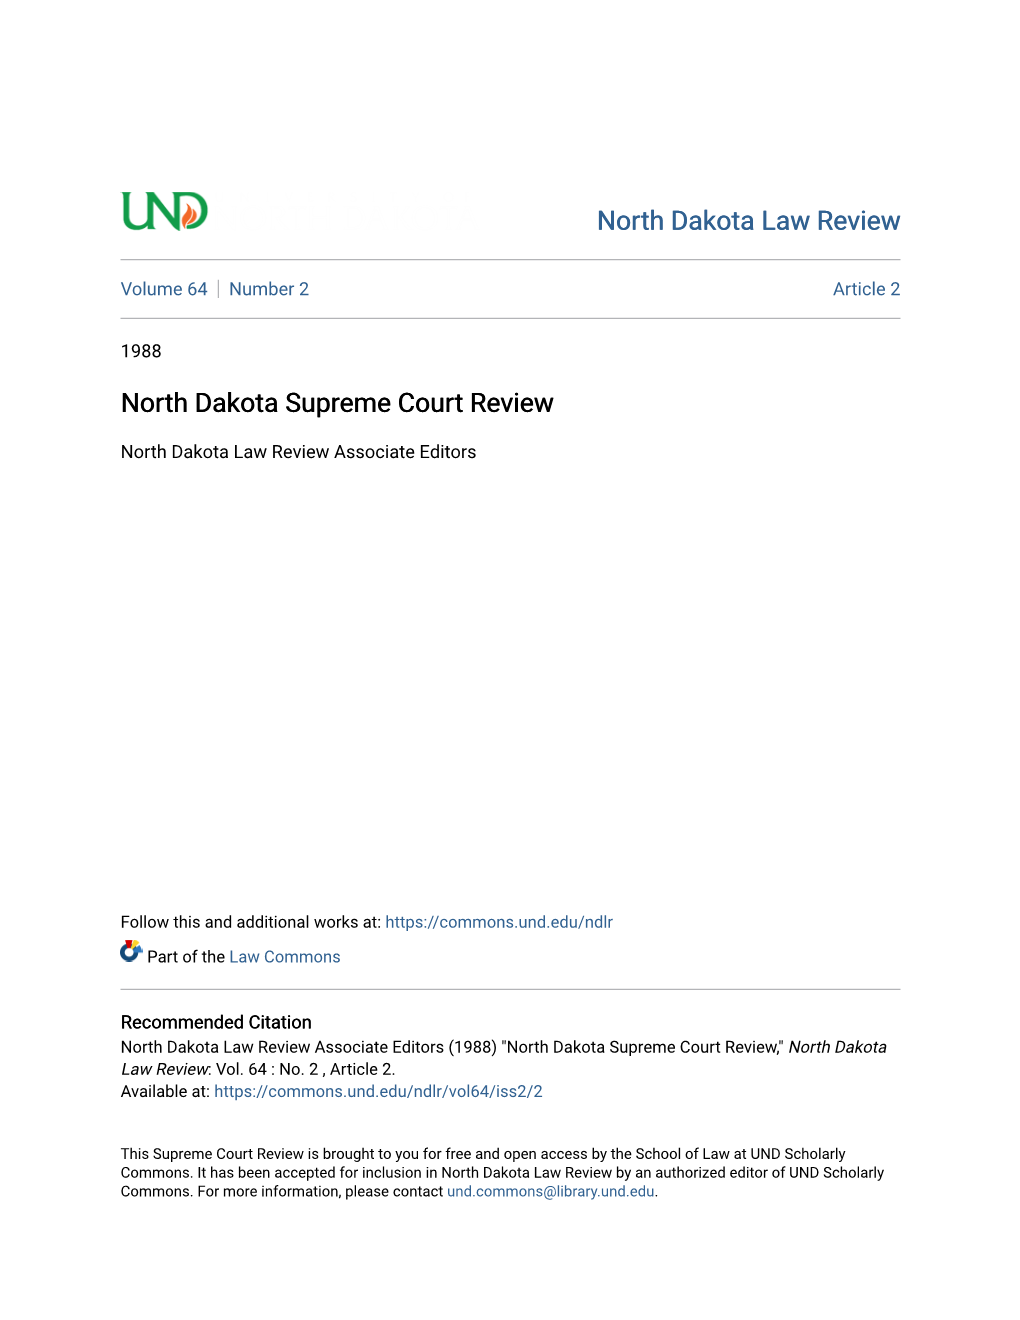 North Dakota Supreme Court Review